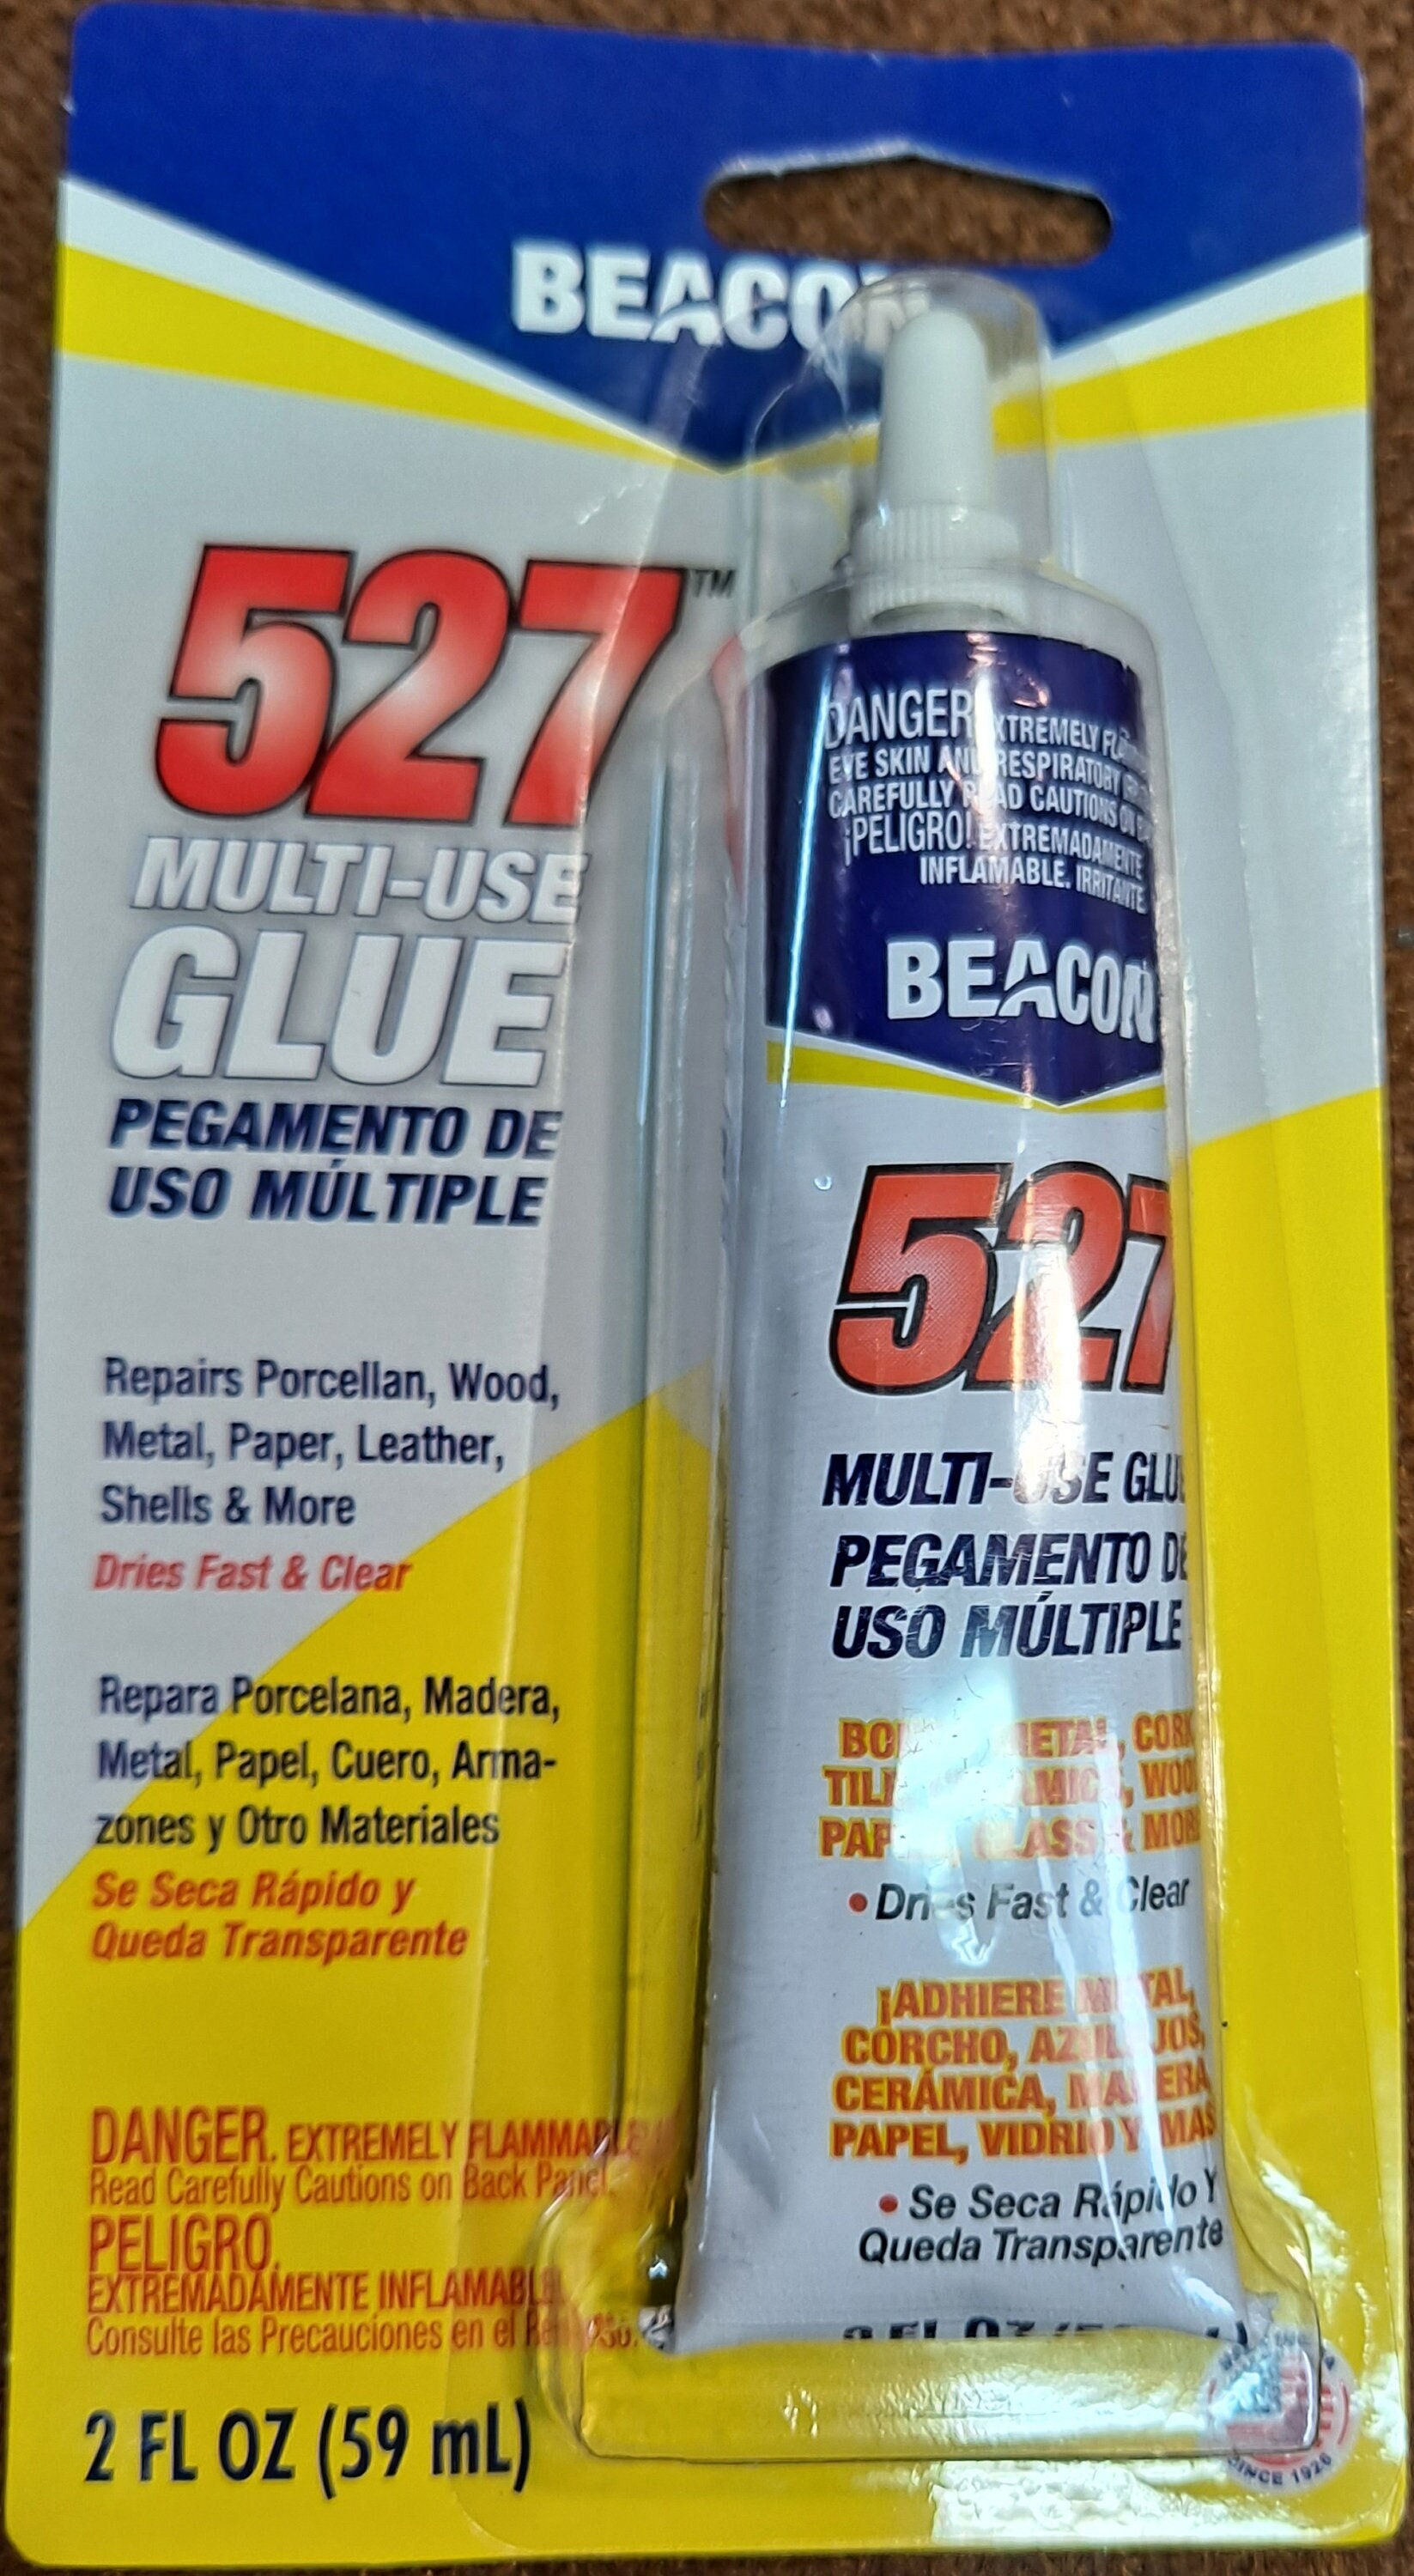 527 Multi-Use Glue 2oz